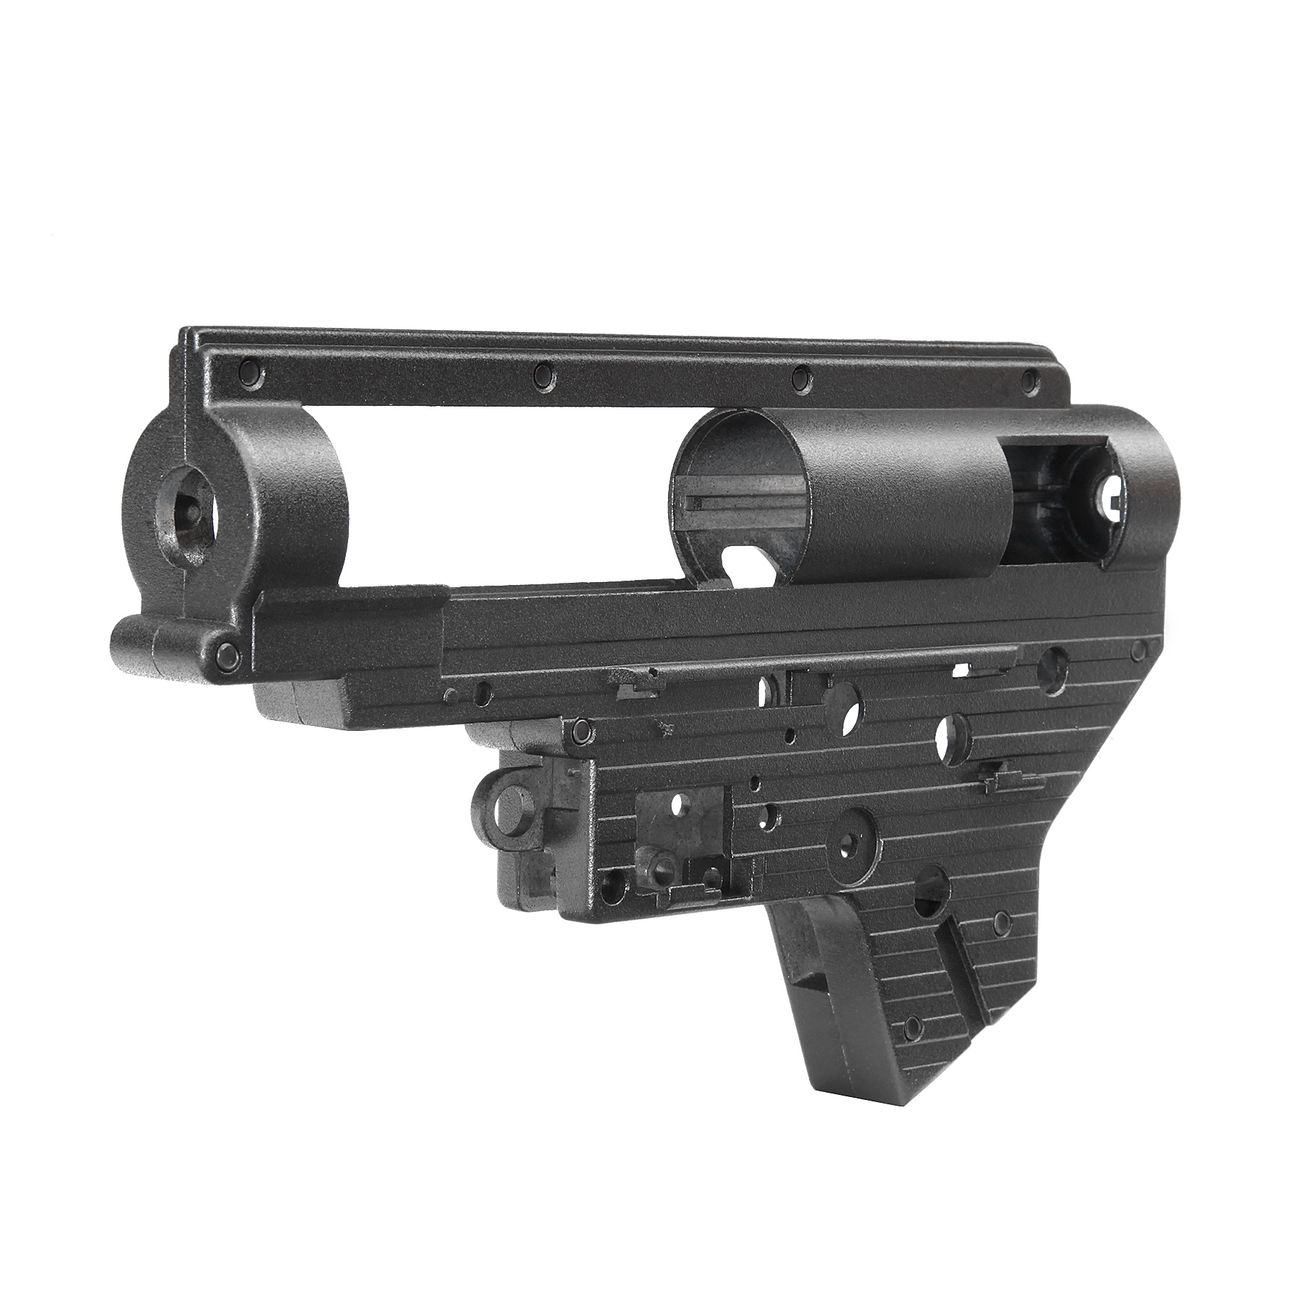 Modify 7mm Torus Aluminium Gearboxgehuse Version 2 inkl. Zubehr schwarz Bild 1